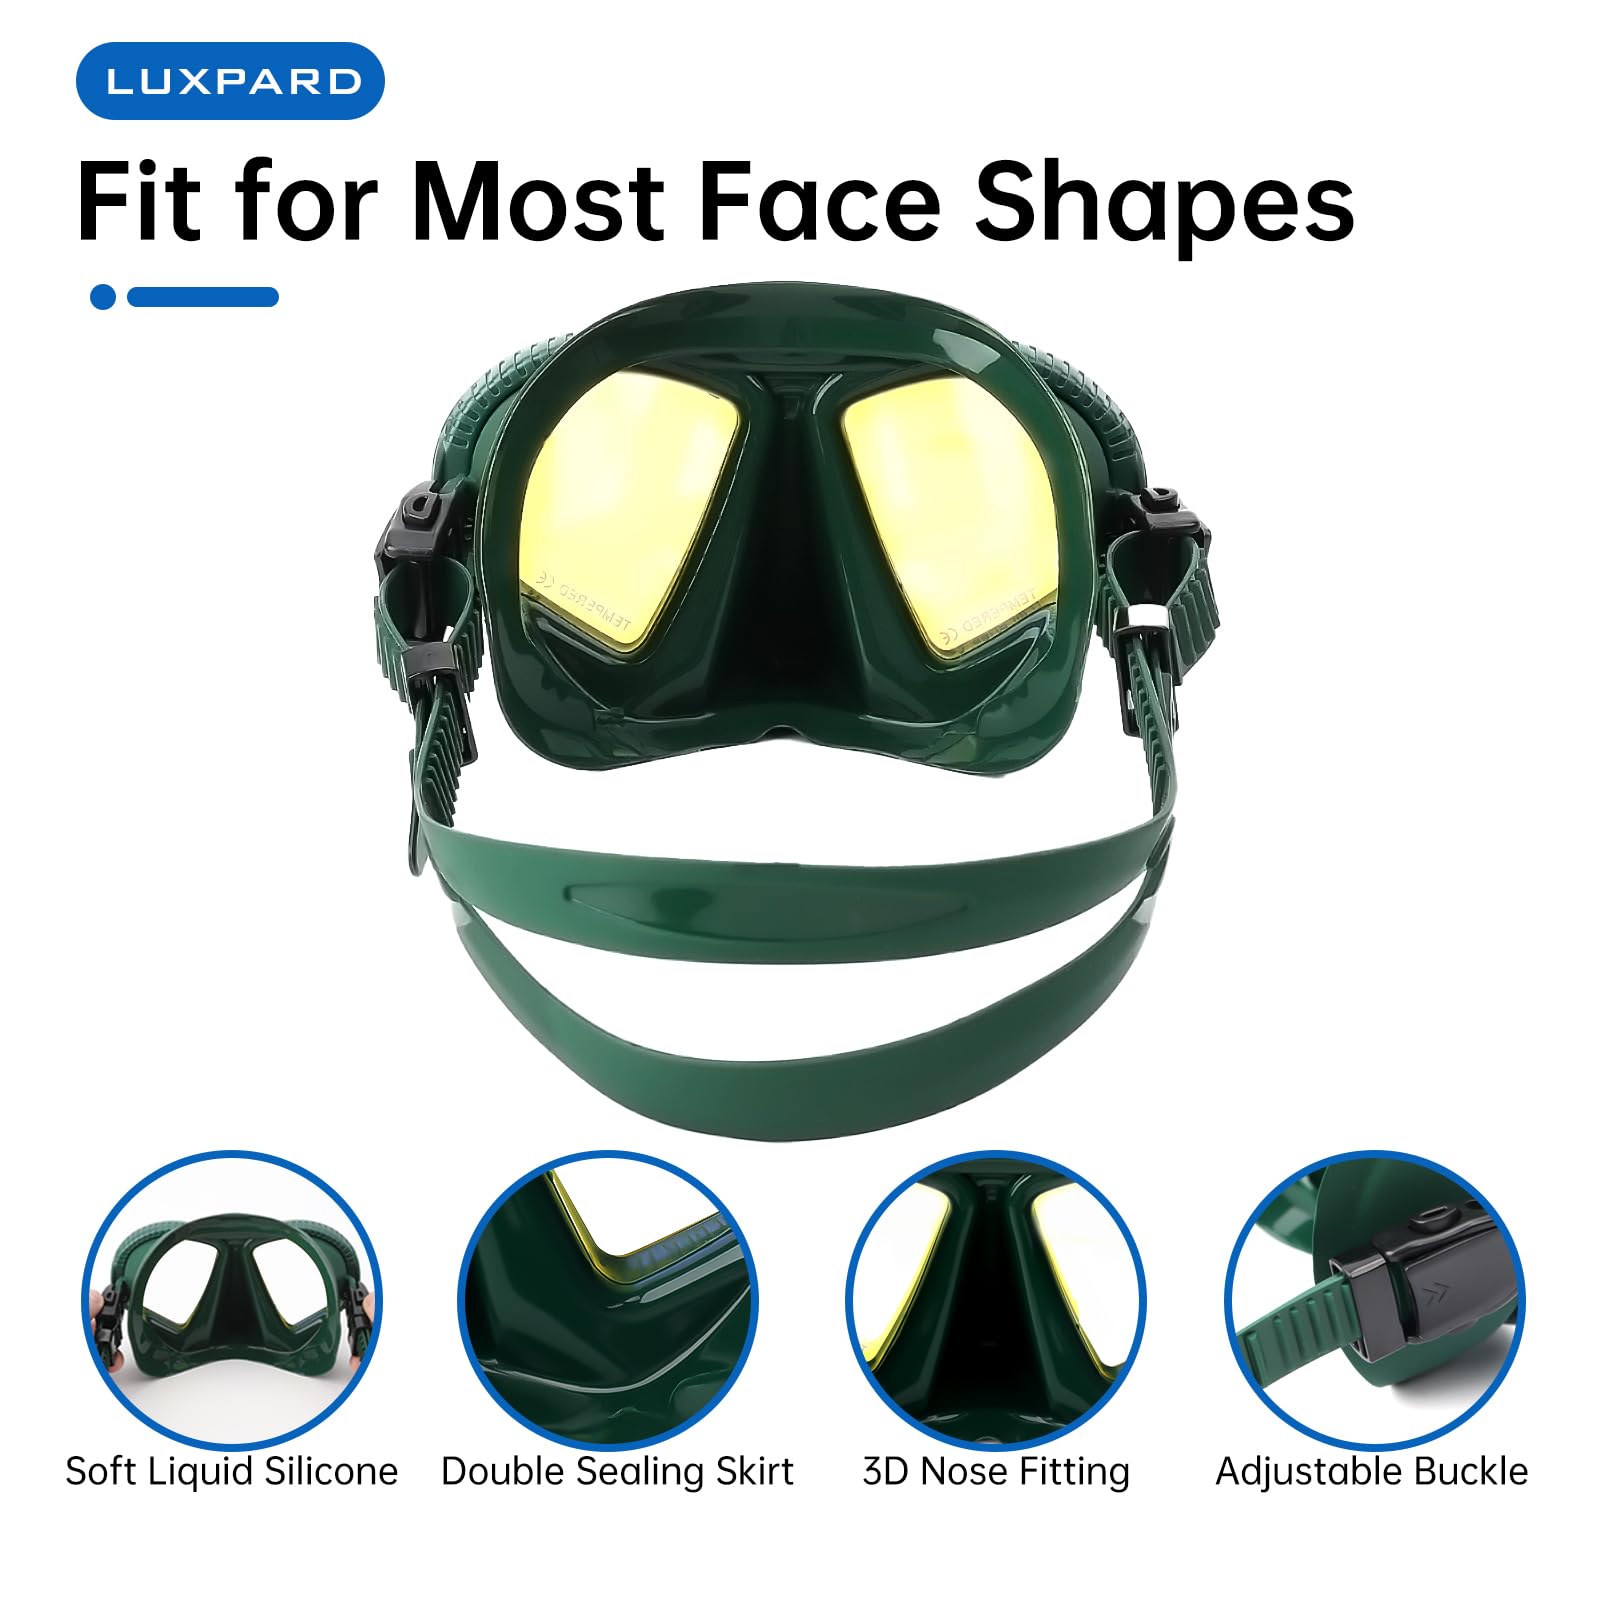 LUXPARD Tauchmaske, Tauchmaske zum Gerätetauchen, Schnorcheln, Freitauchen und Sporttauchen. Anti-Beschlag-Anti-Leck-Tauchmaske mit geringem Volumen und UV-beschichteten Gläsern, Tauchausrüstung für Erwachsene